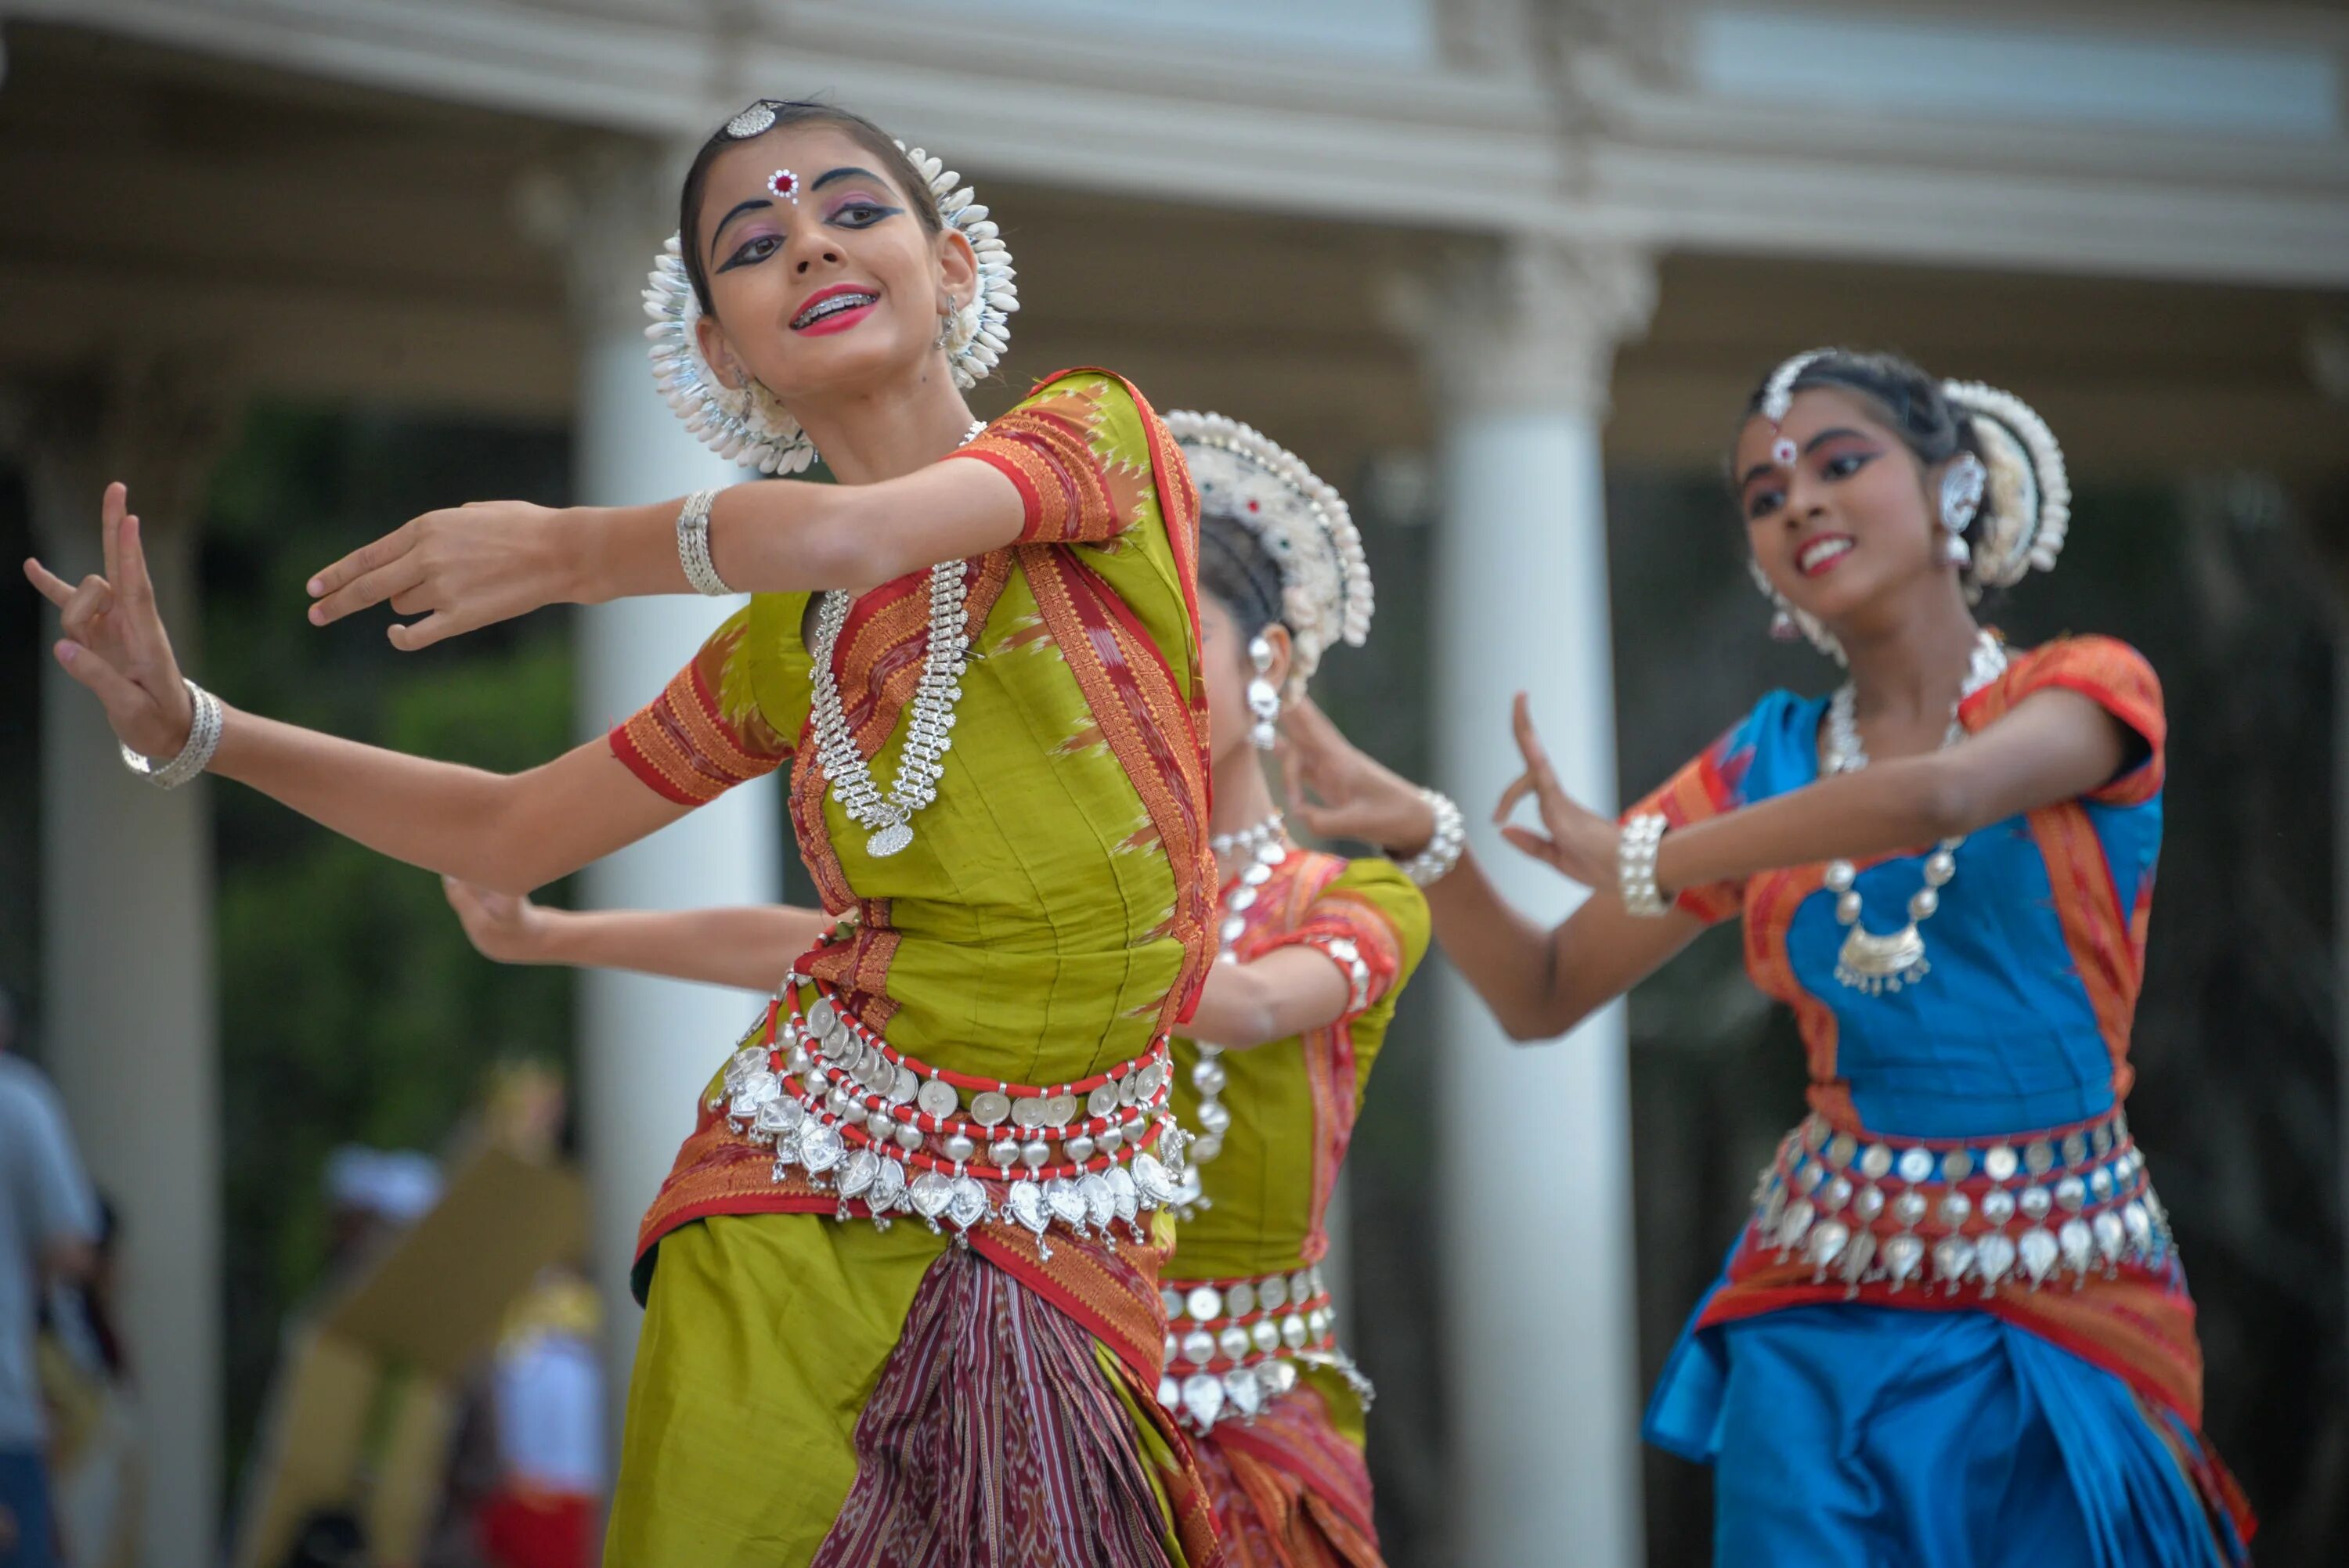 Танцы народа видео. Одисси индийский танец. Танцевальное искусство Индии Одисси. Индия танцы. Индийский народный танец.